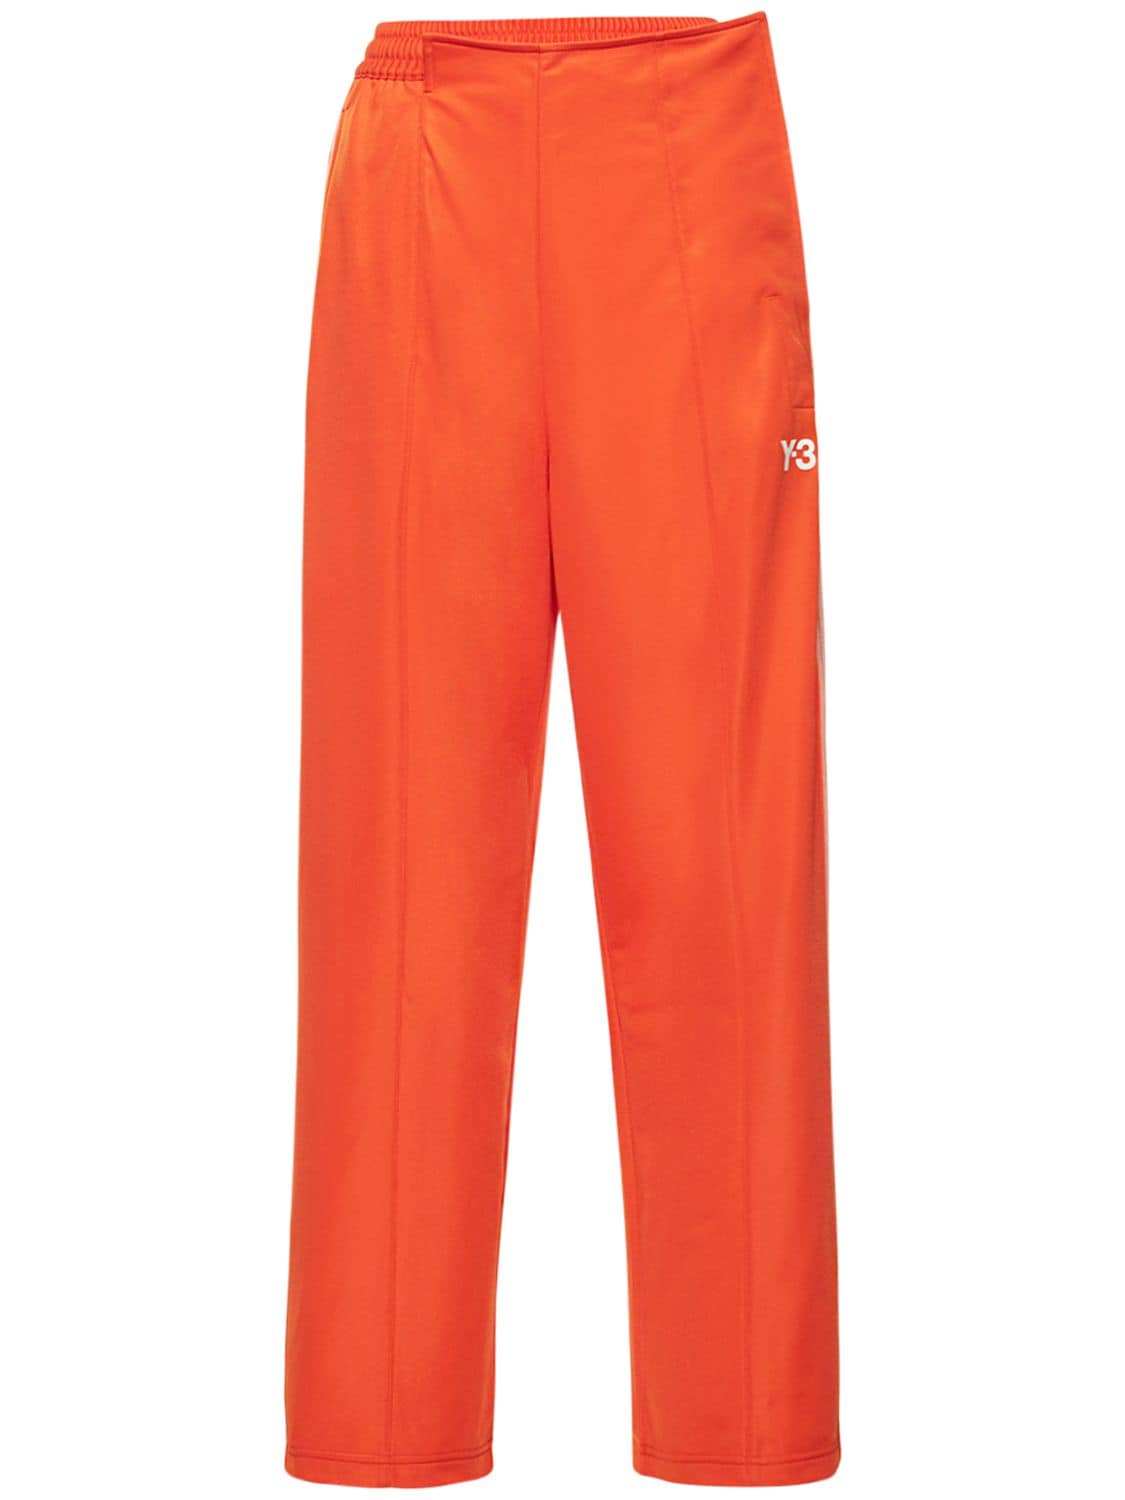 Firebird Tt Pants – WOMEN > CLOTHING > PANTS